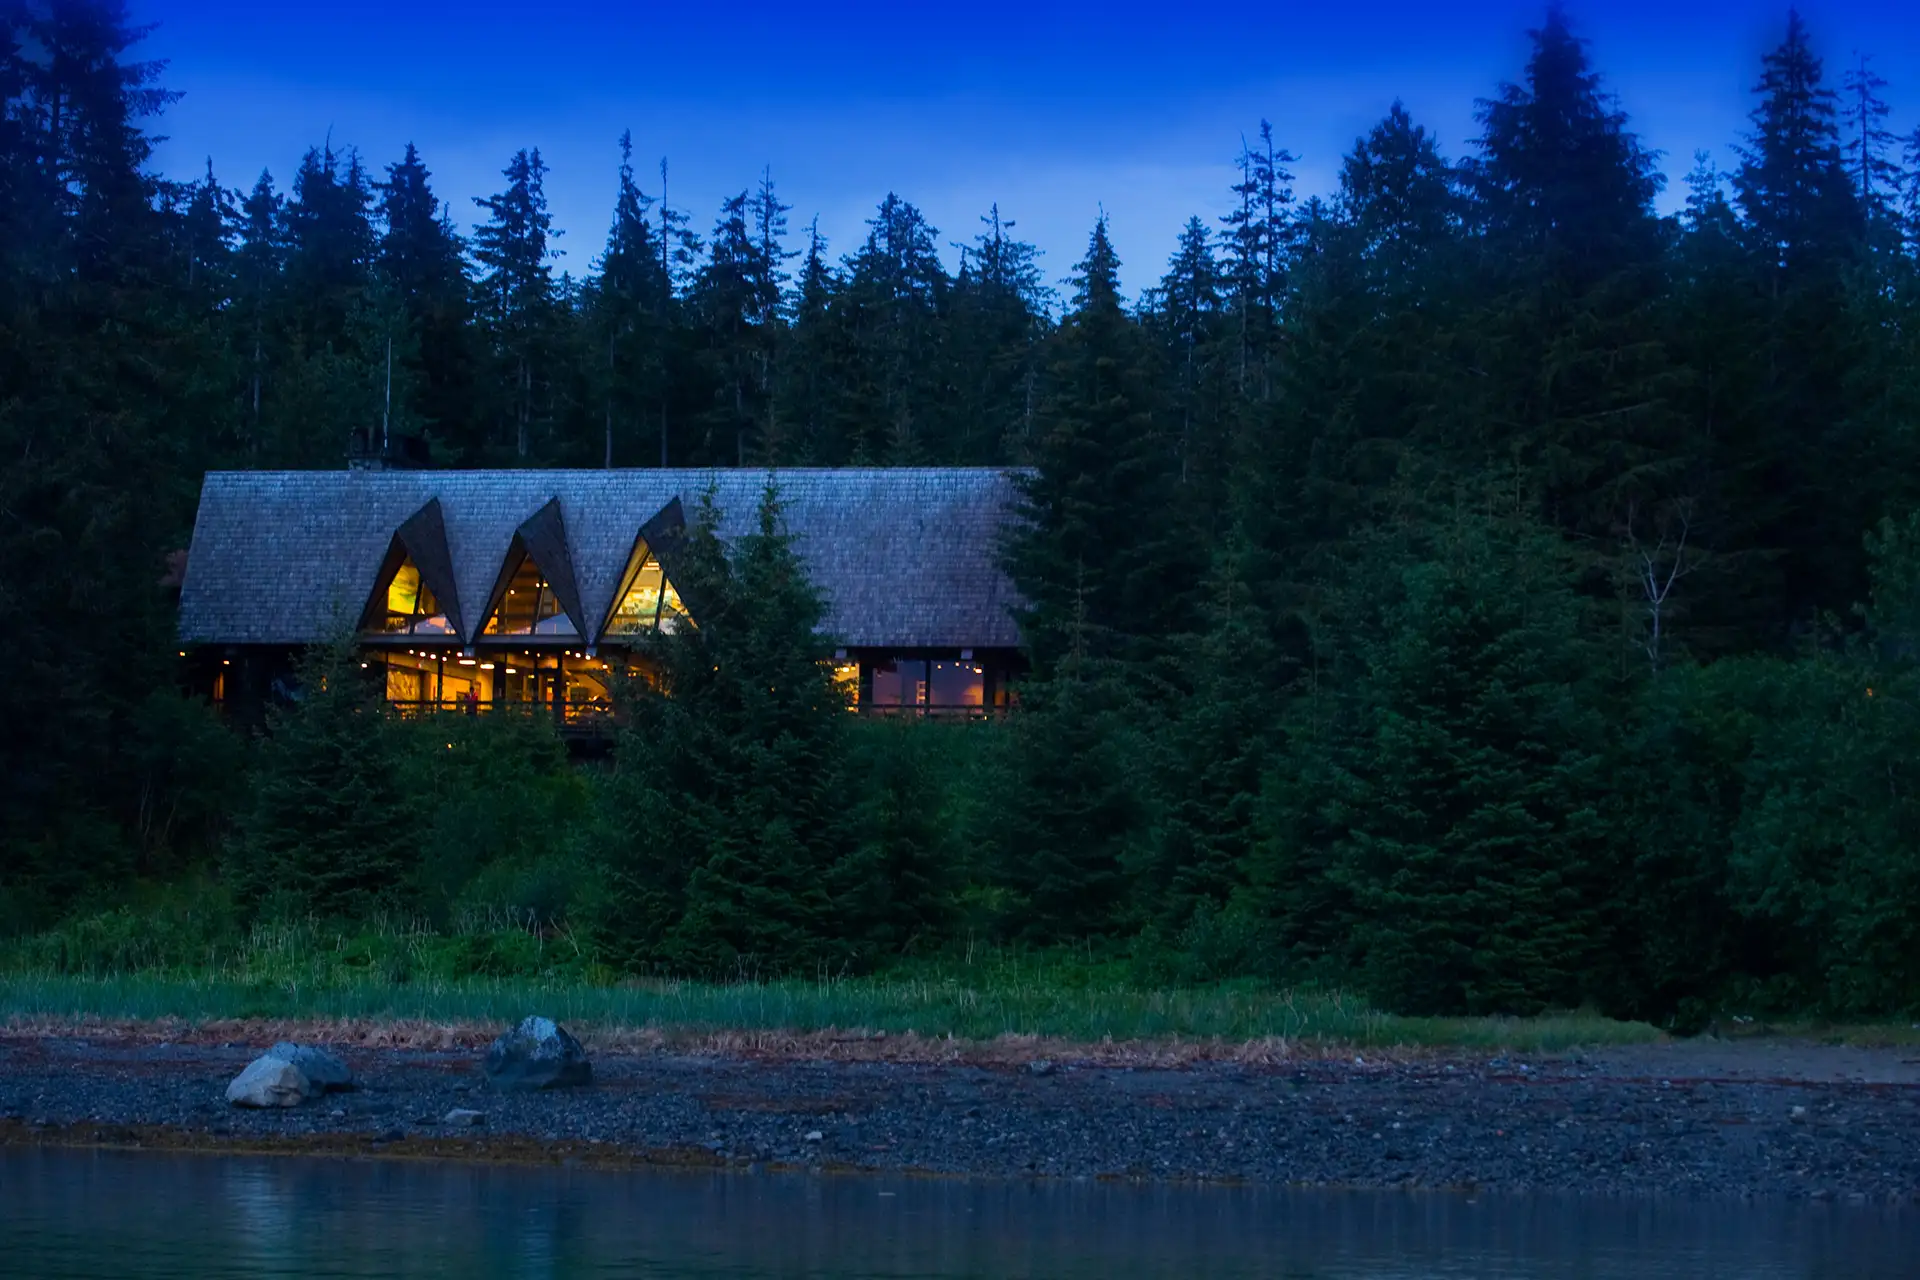 Glacier Bay Lodge in Glacier Bay National Park and Preserve